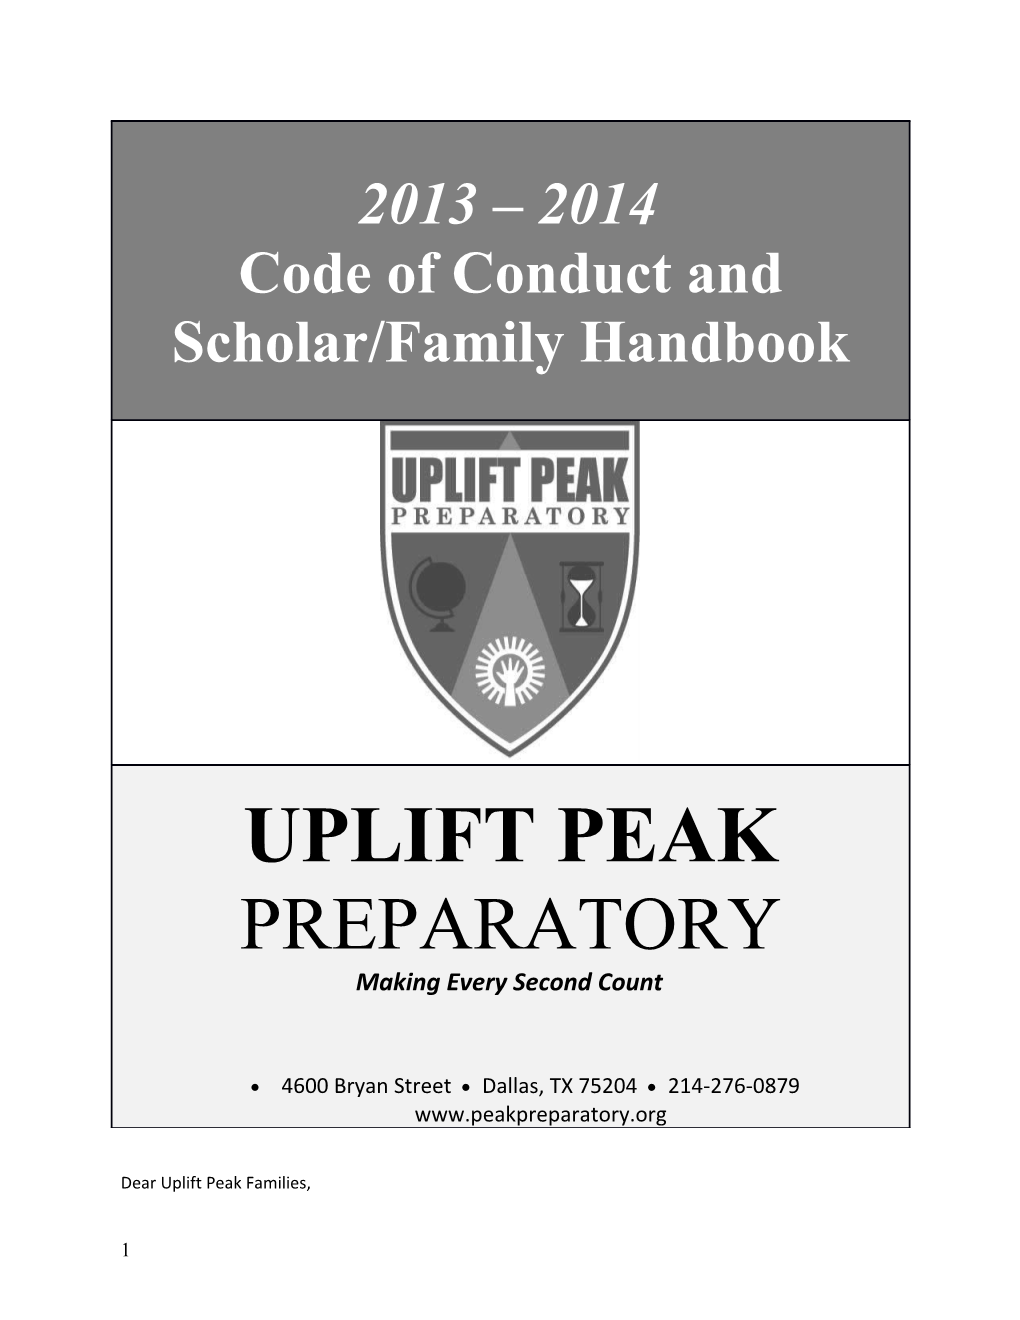 Dear Uplift Peak Families